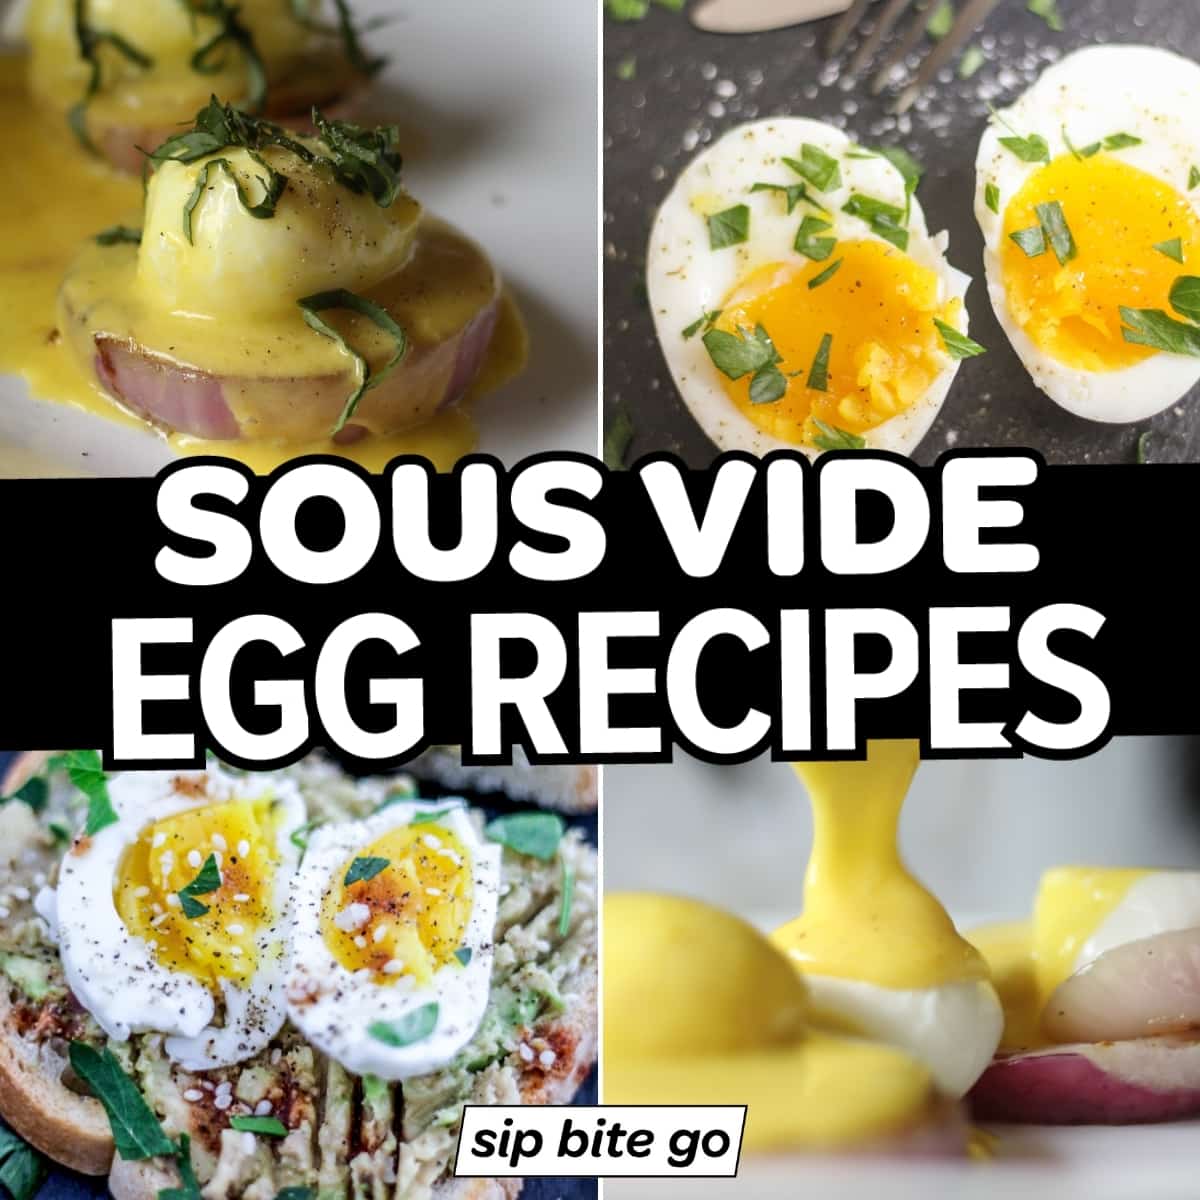 https://sipbitego.com/wp-content/uploads/2021/04/sous-vide-egg-recipes-sip-bite-go-feature.jpg